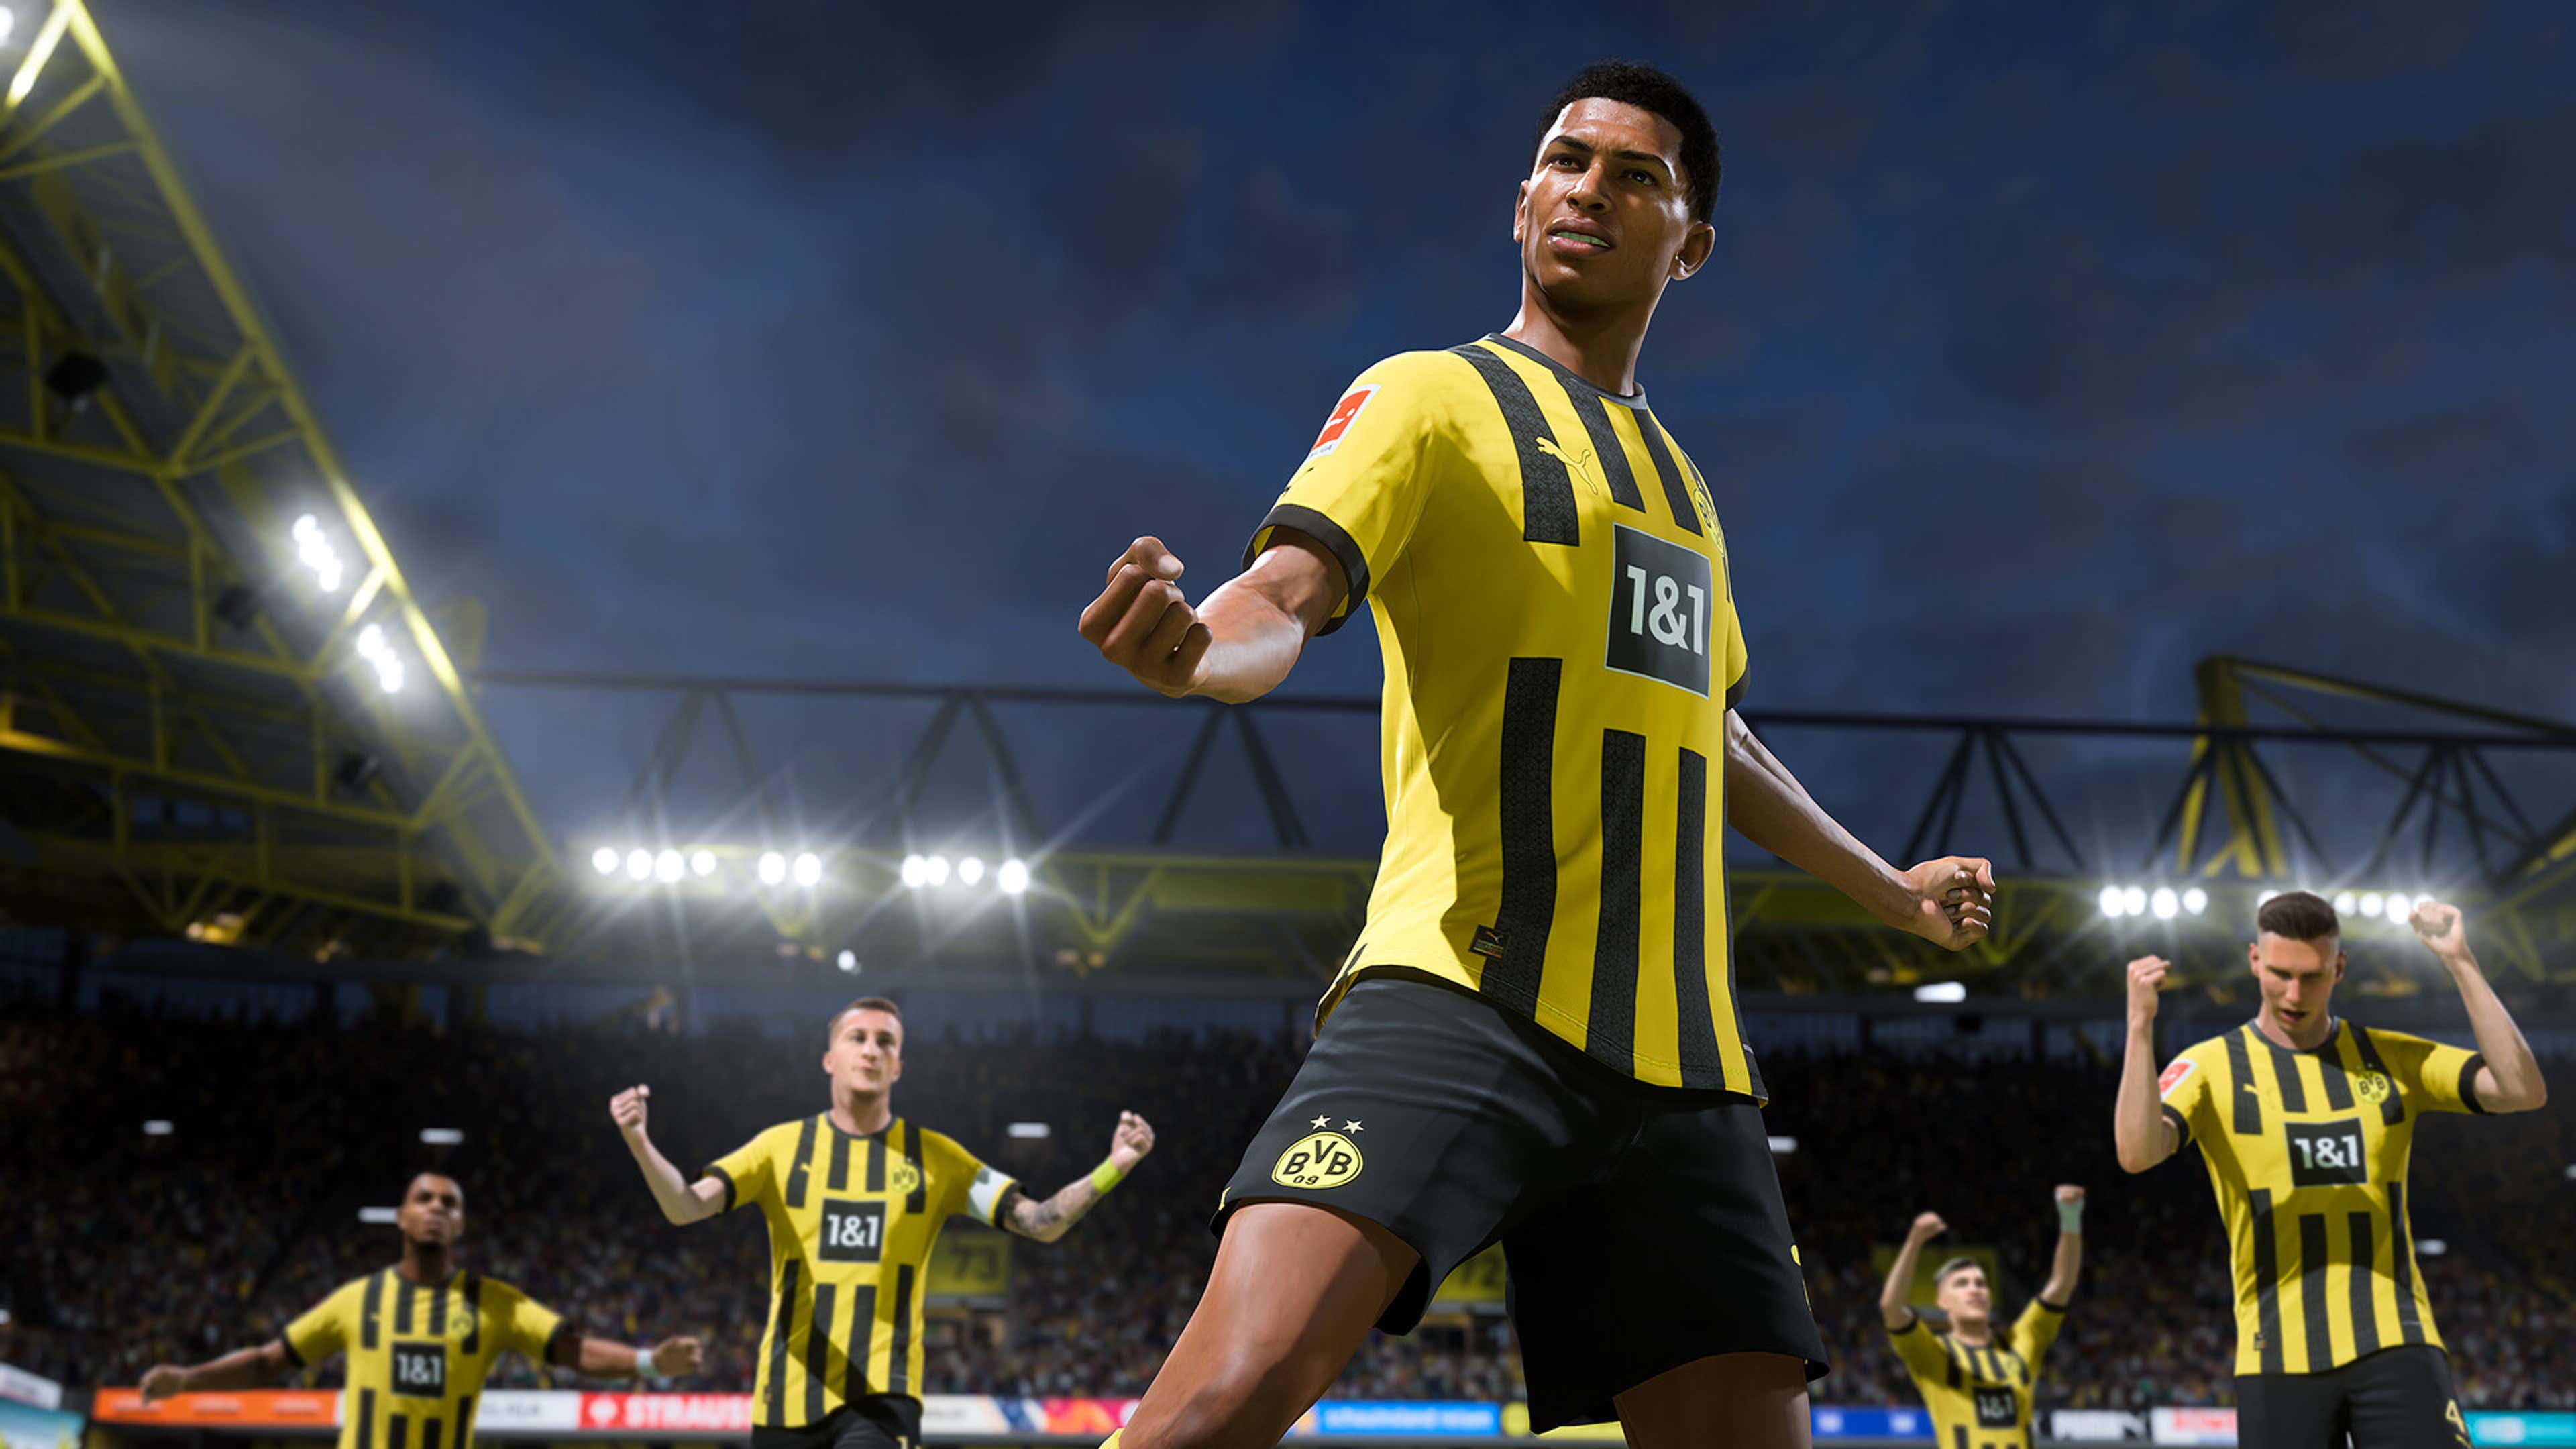 FIFA 23: as melhores dicas para jogar melhor - Liga dos Games